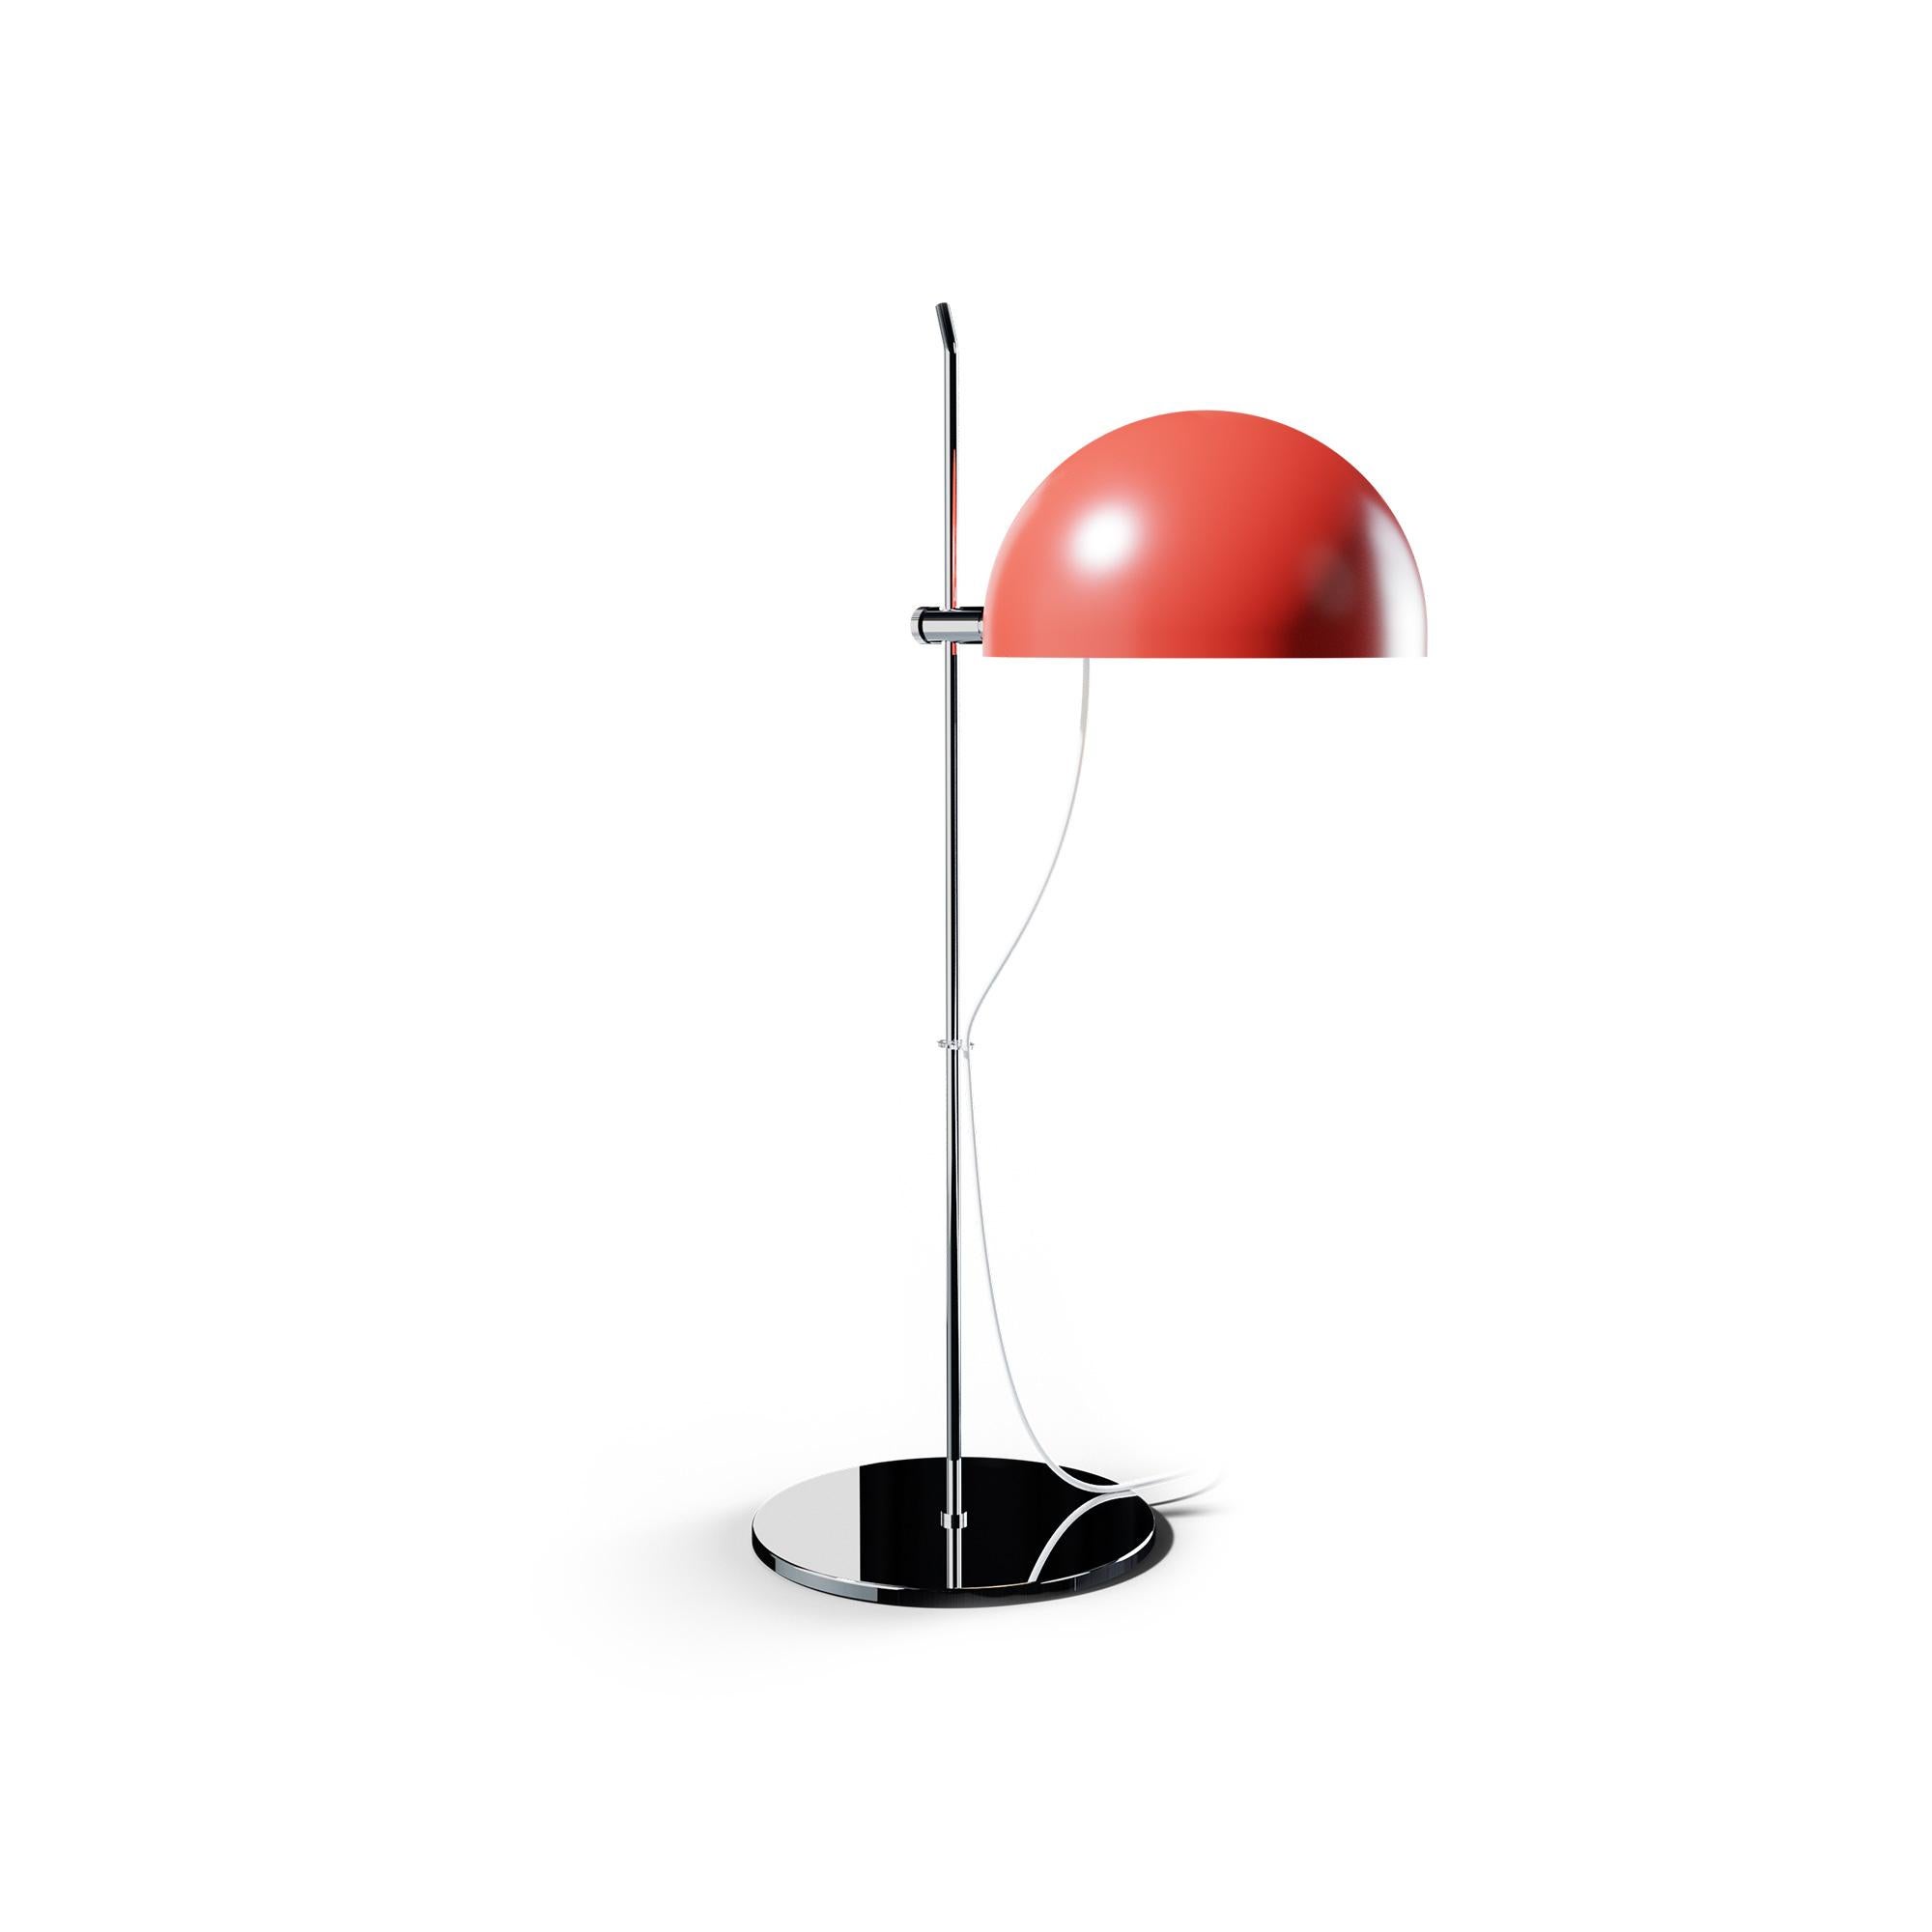 Alain Richard 'A21' Desk Lamp in Orange for Disderot For Sale 4